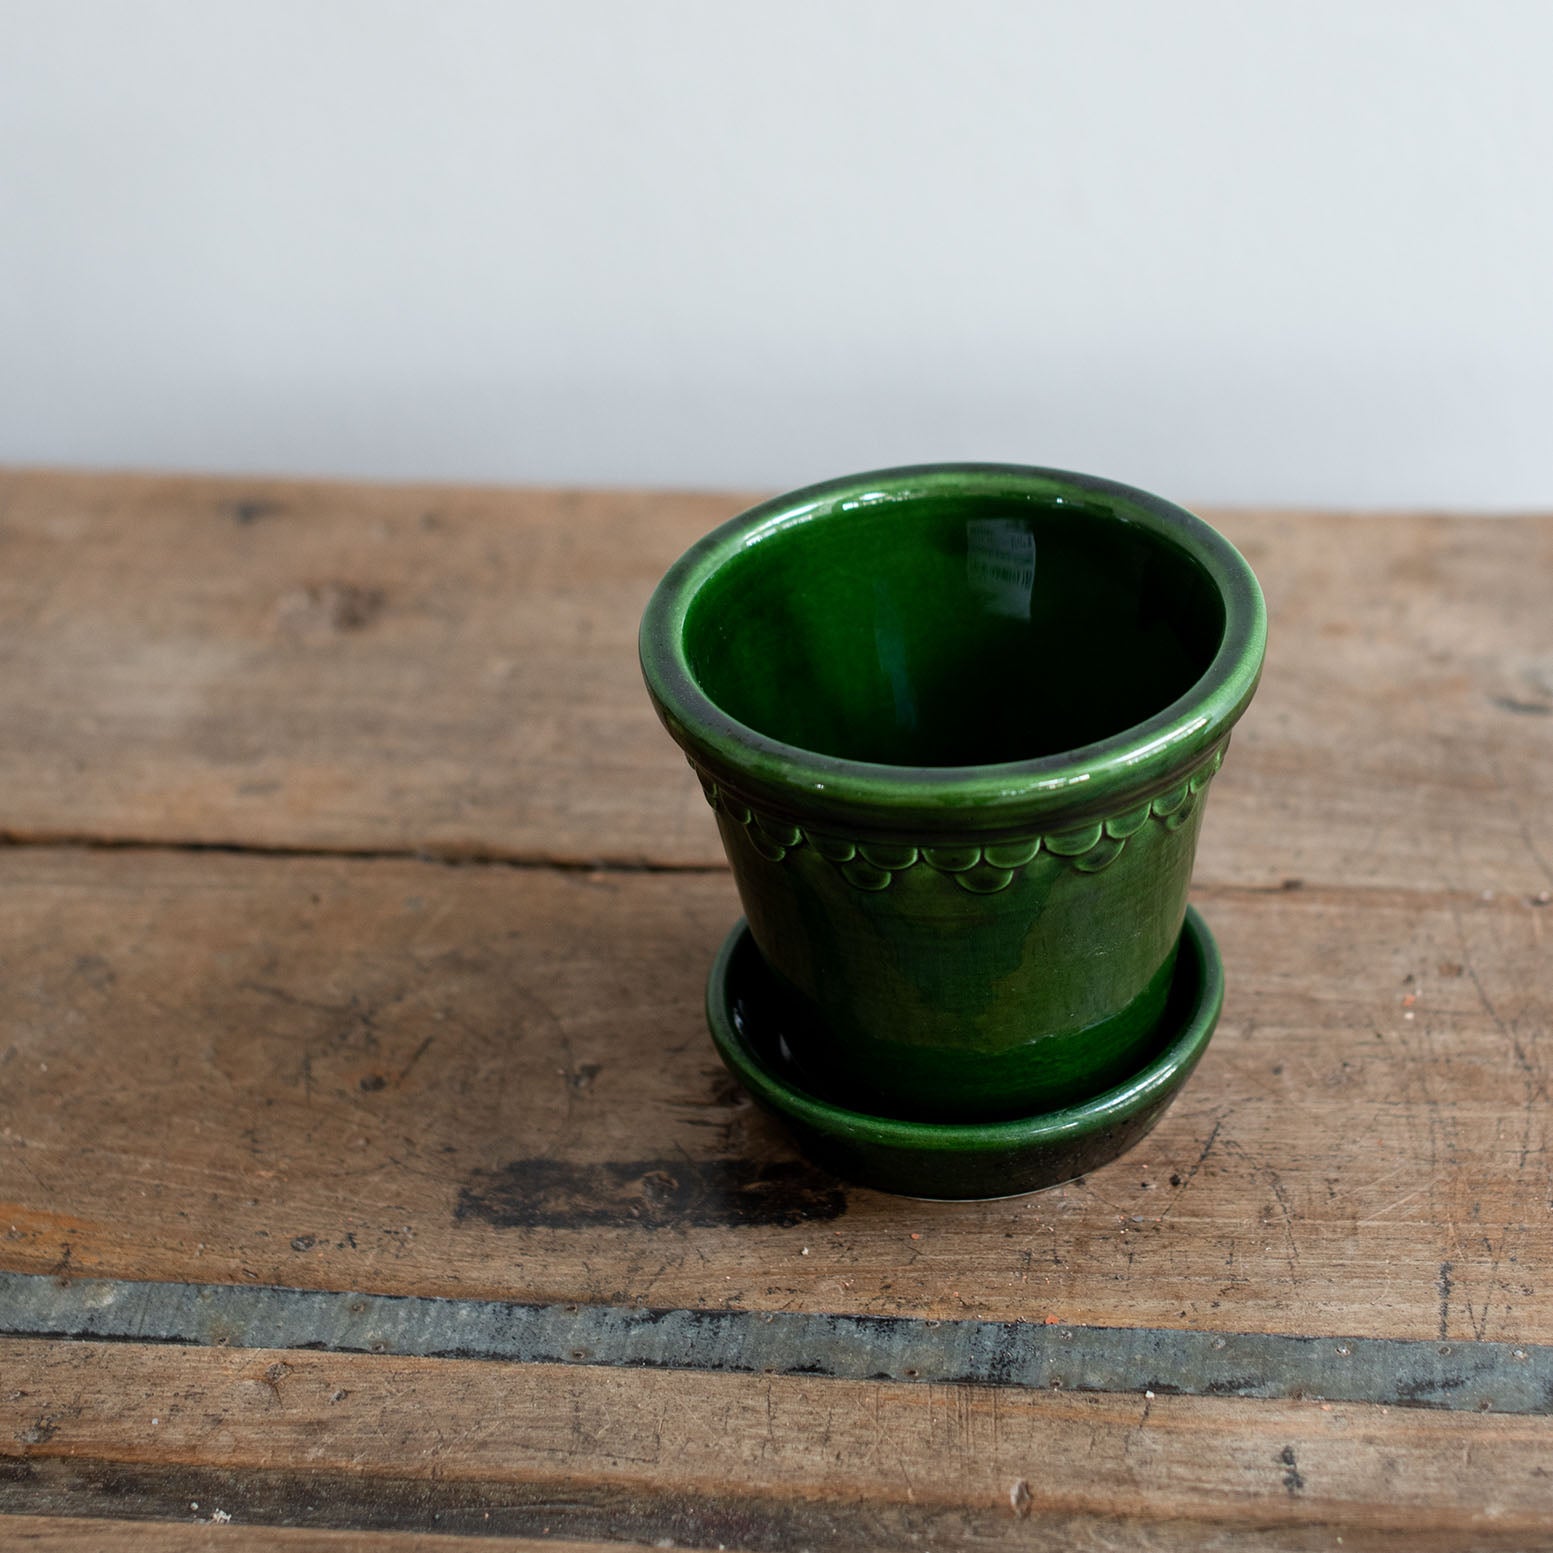 Ton Blumentopf mit Untersetzer in grün glänzend lackiert. Kopenhagener Topf, der auch als Schlosstopf von Bergs bekannt ist, hergestellt von Bergs Potter.